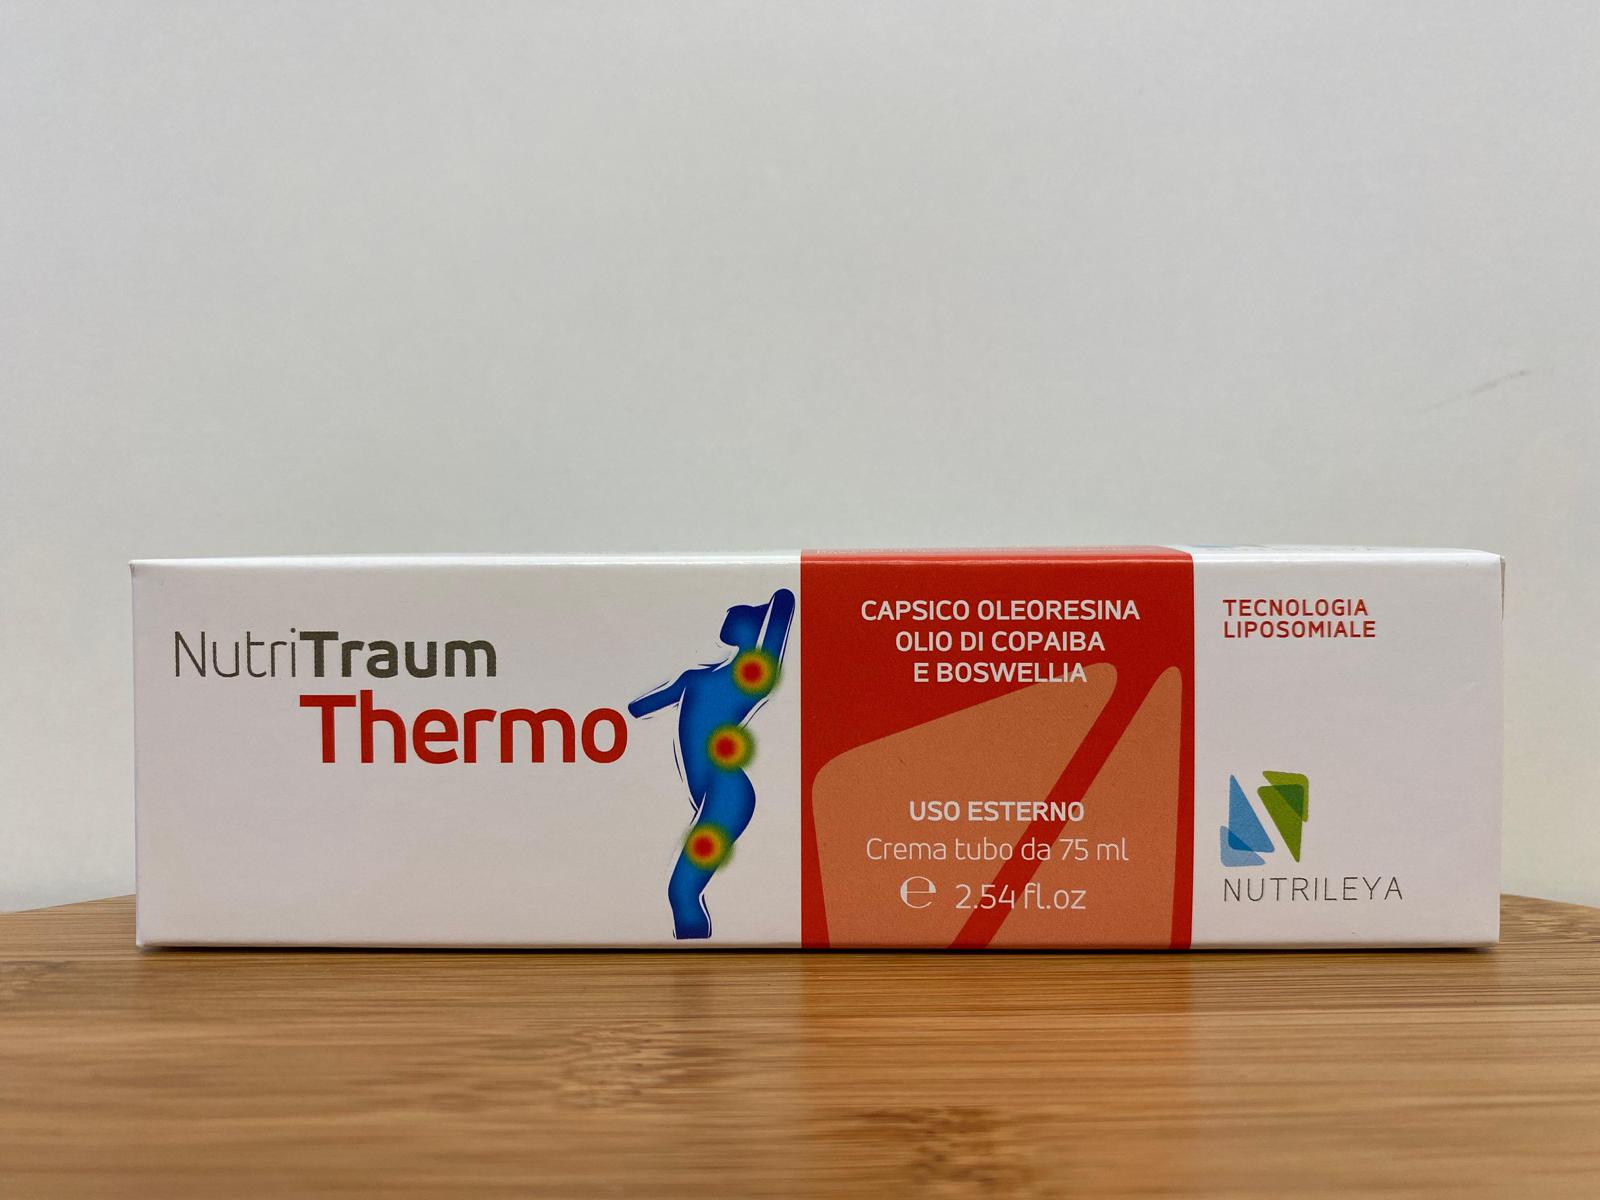 Nutrileya: NutriTraum Thermo